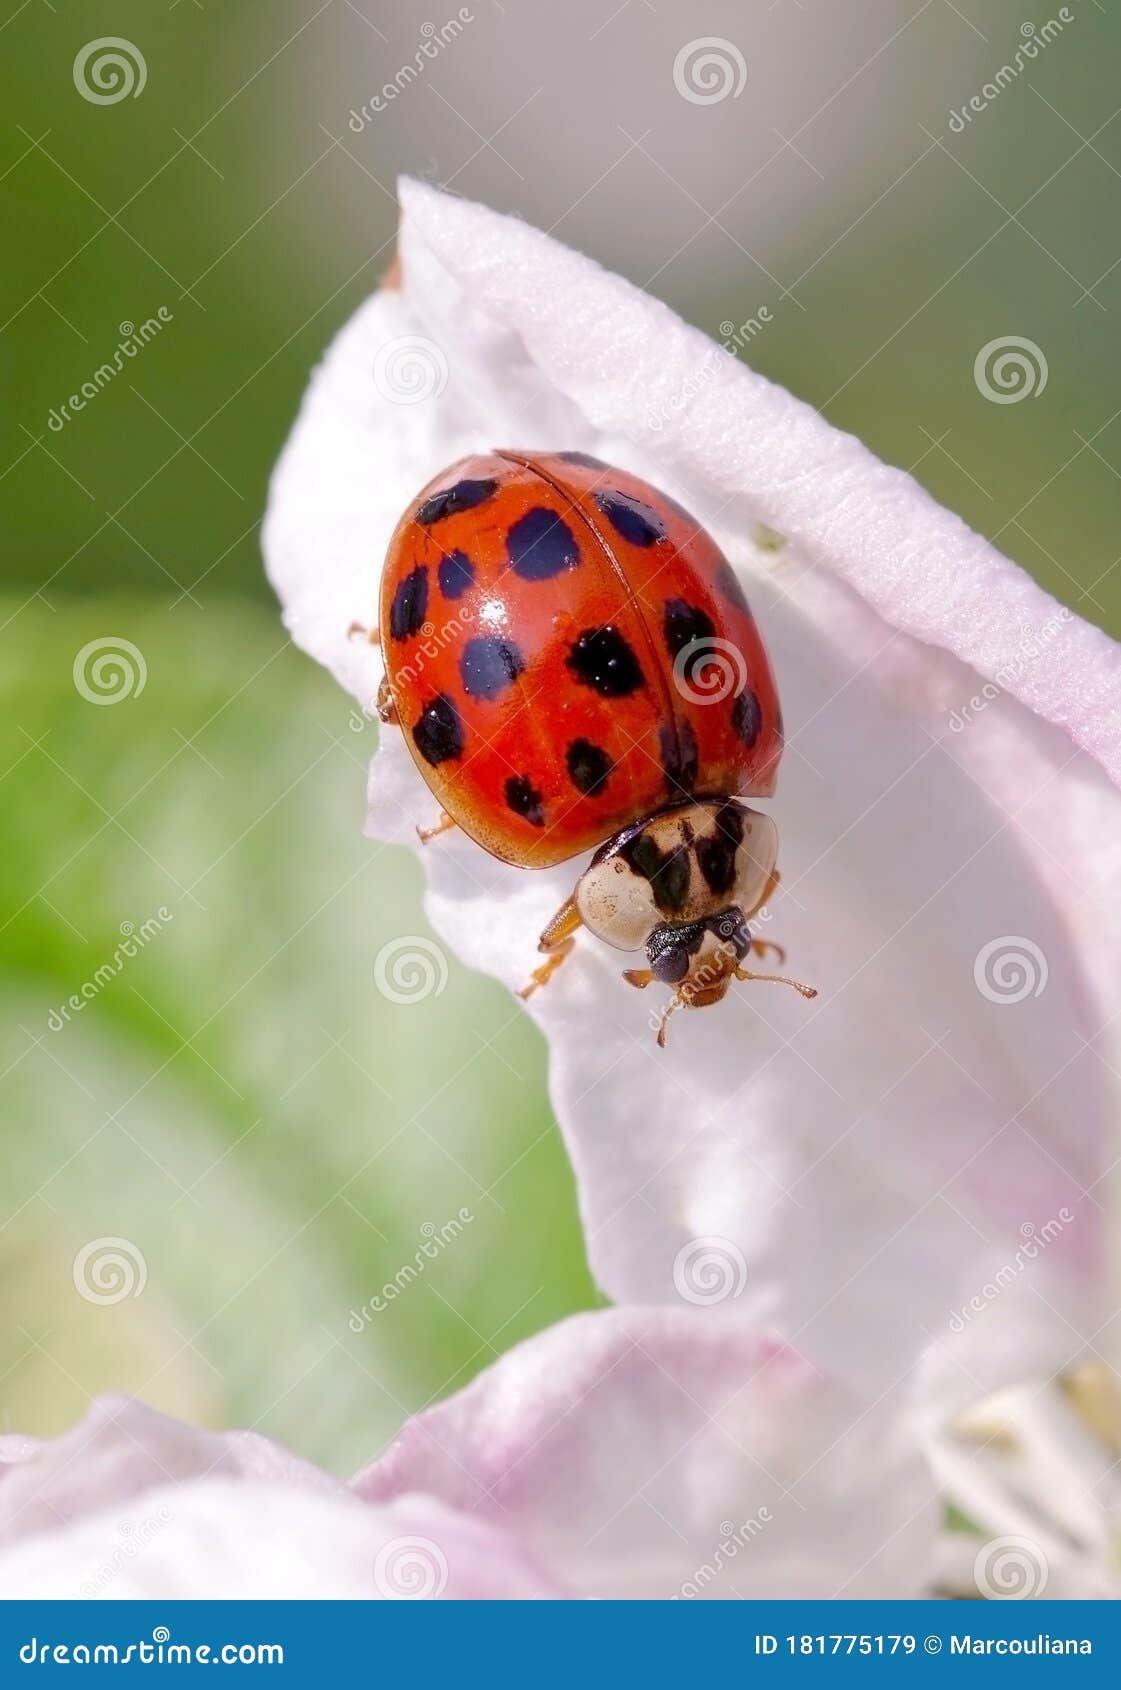 harlequin or asian ladybeetle harmonia axyridis